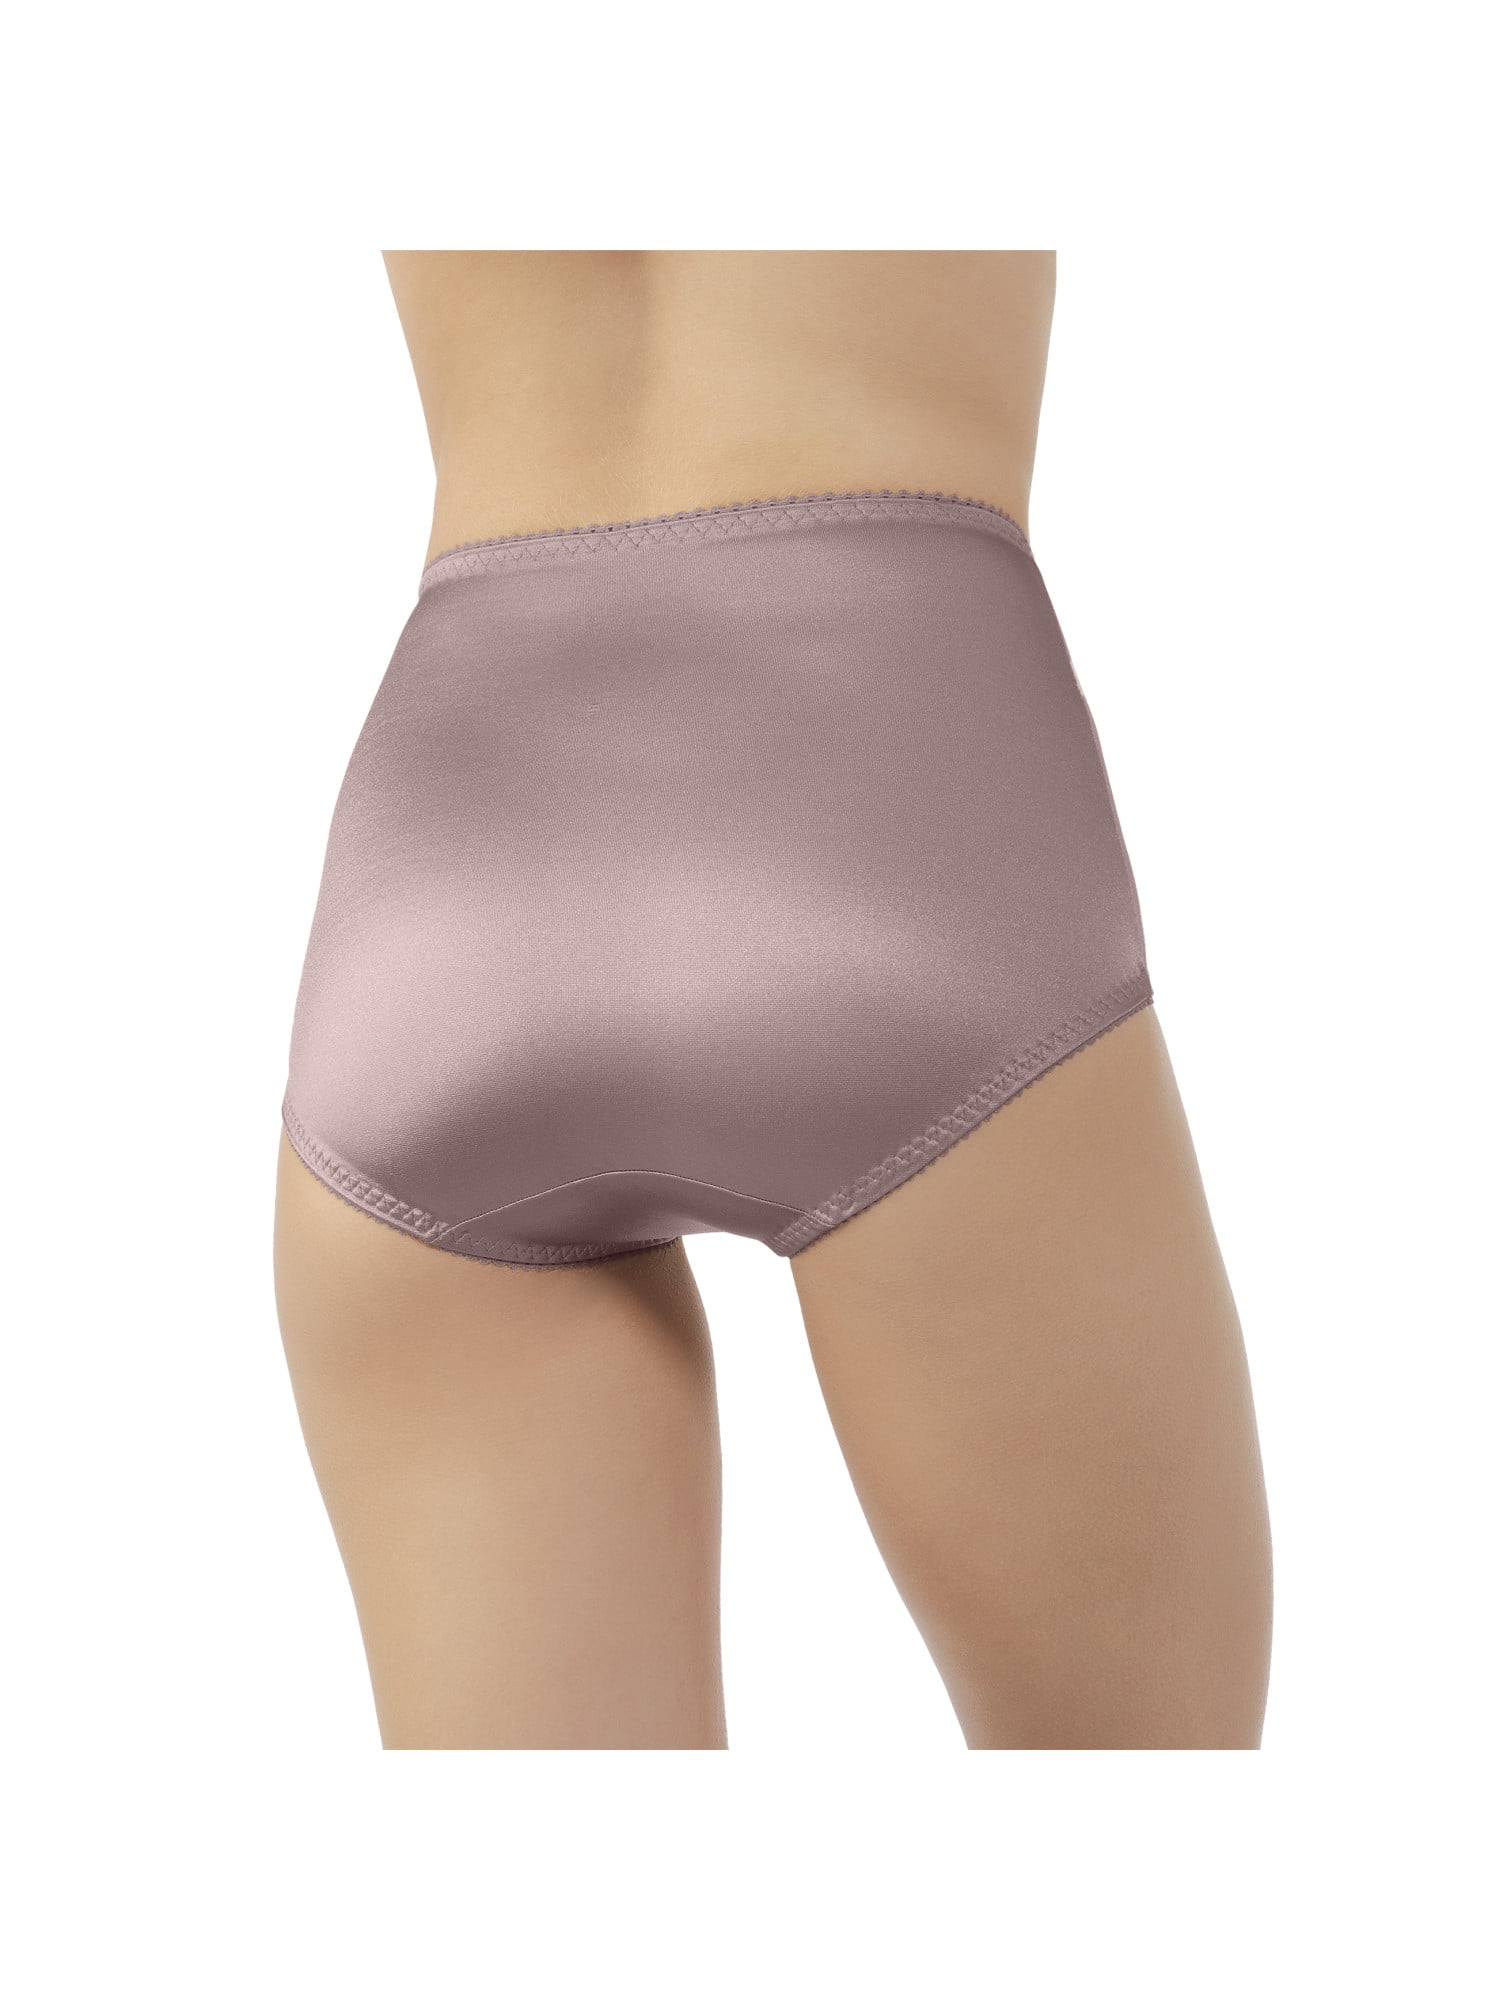 vassarette women's undershapers light control brief panties, style 40001 